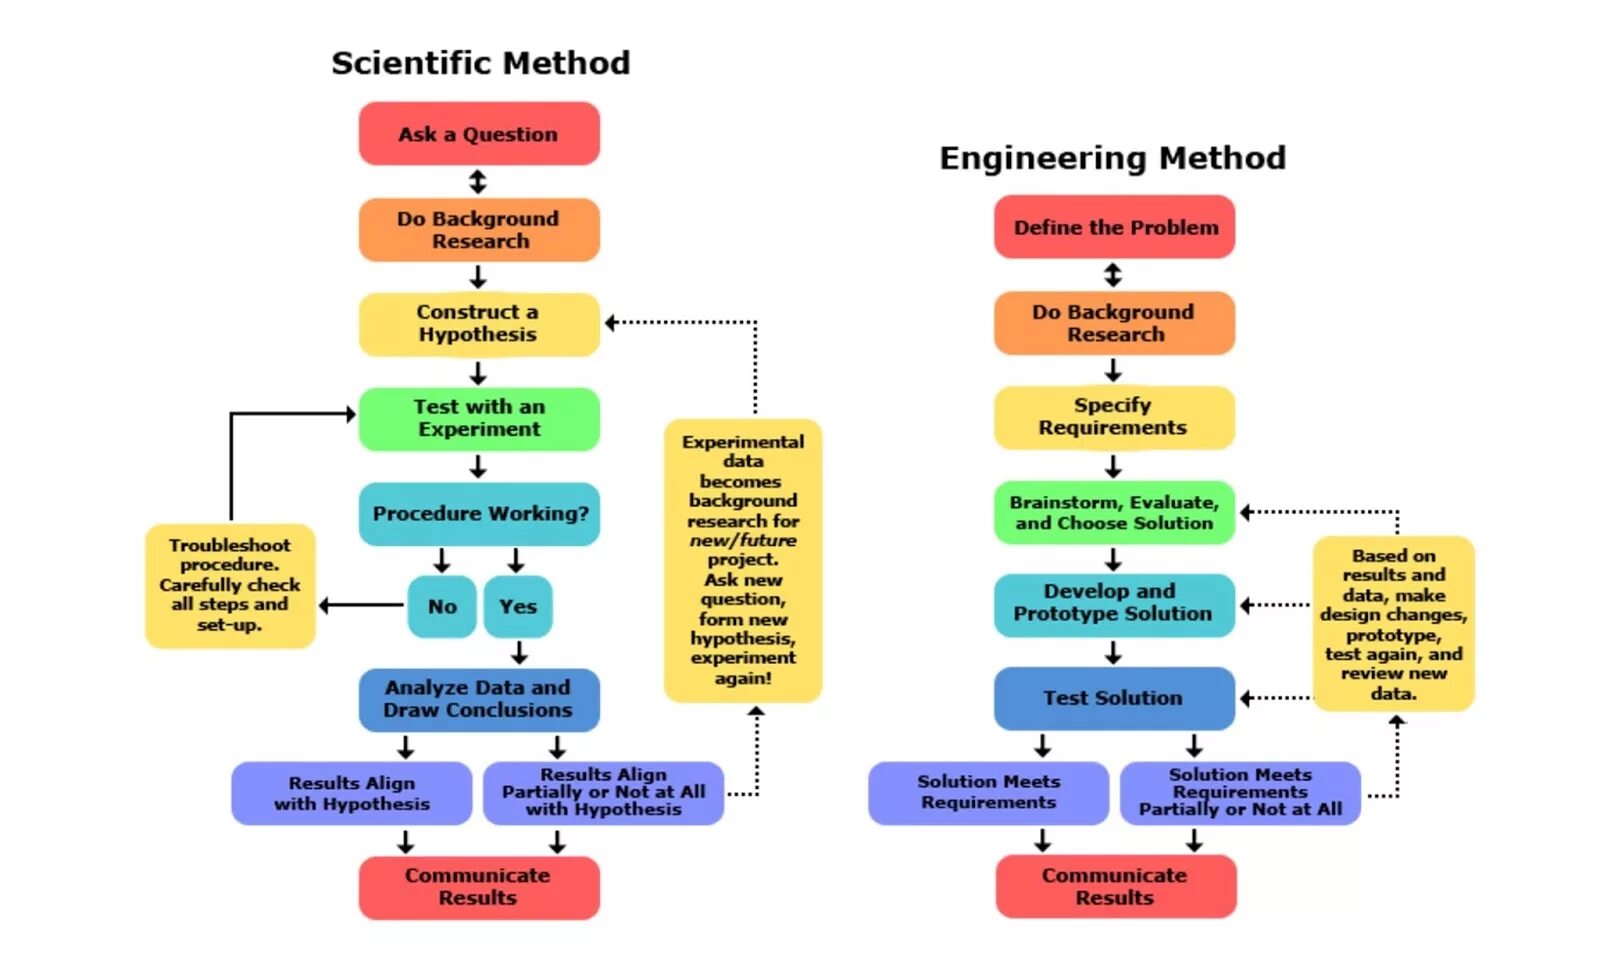 Methods engineer